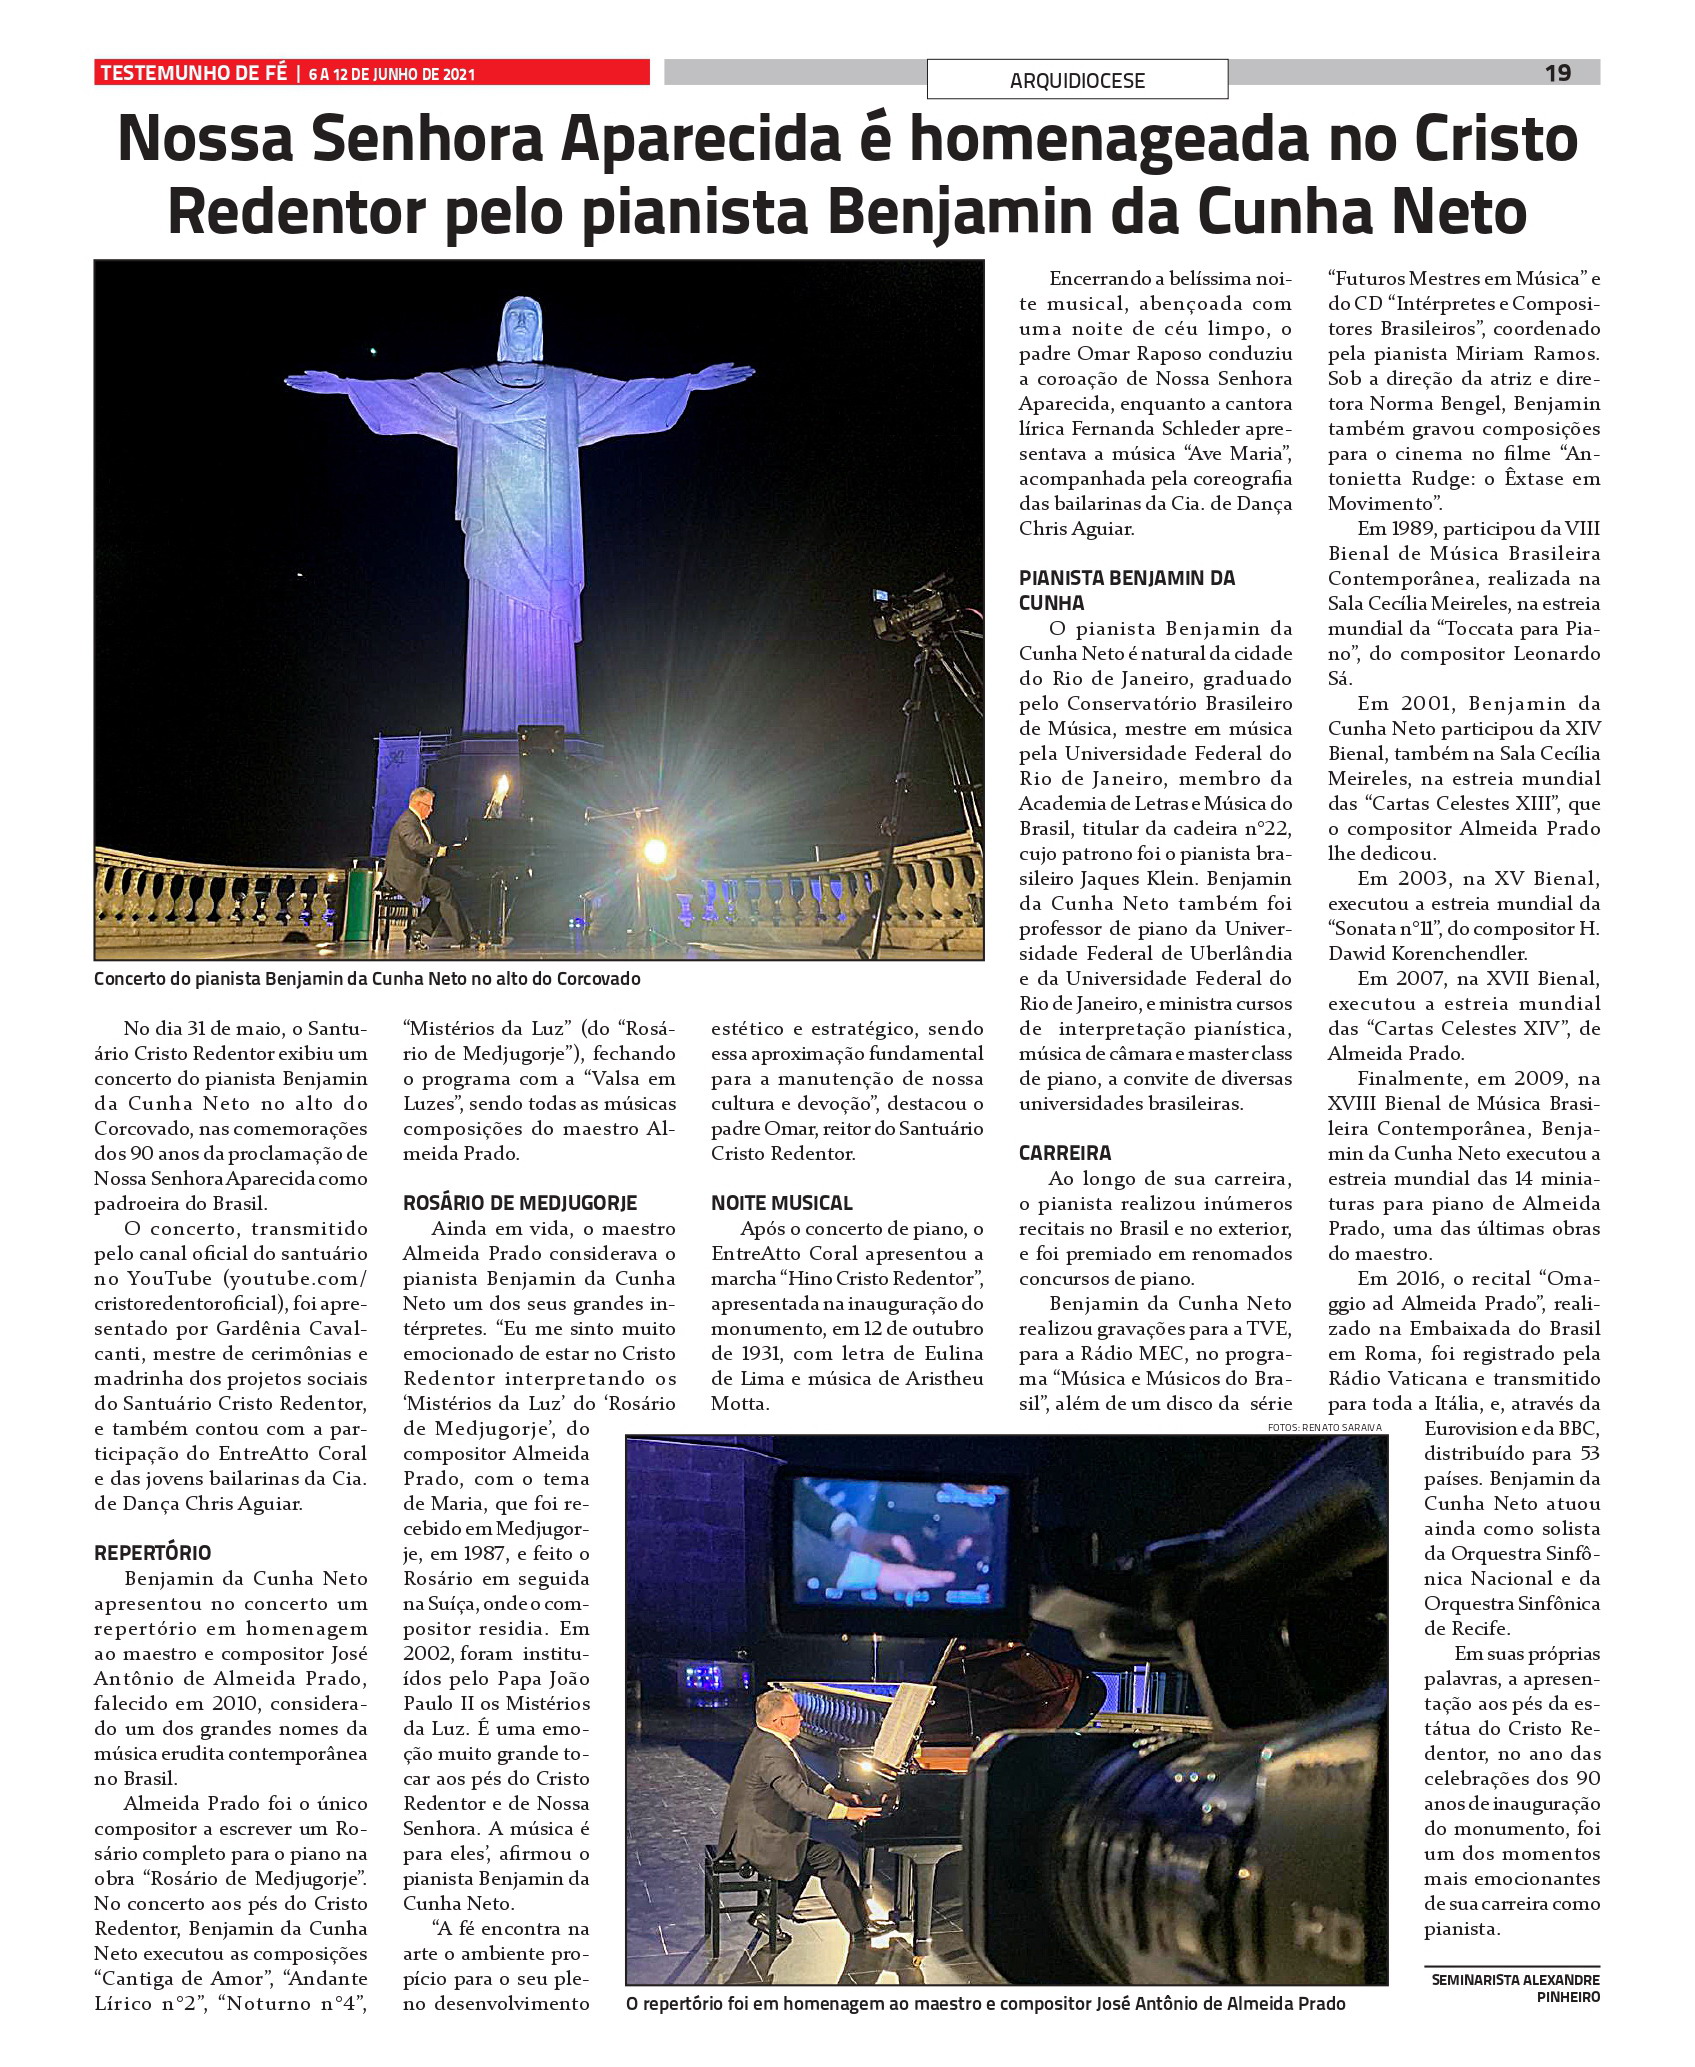 Santuário Cristo Redentor vai exibir concerto do pianista  Benjamin da Cunha Neto em honra a Nossa Senhora nessa  segunda-feira